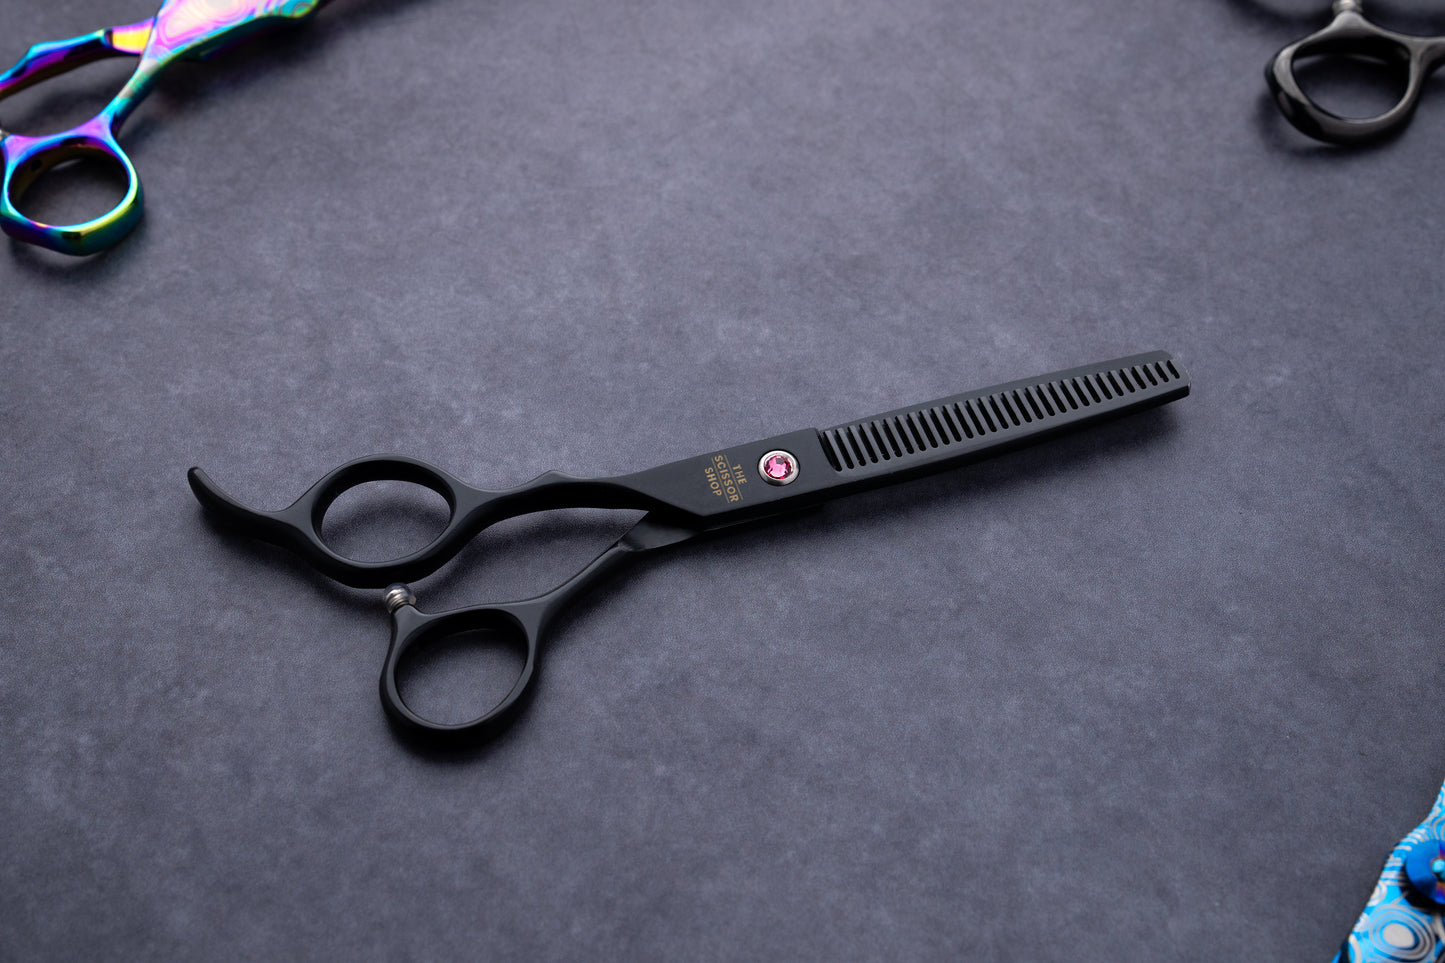 Left Handed  Kora Series 6" Japanese Steel Hairdressing Scissors